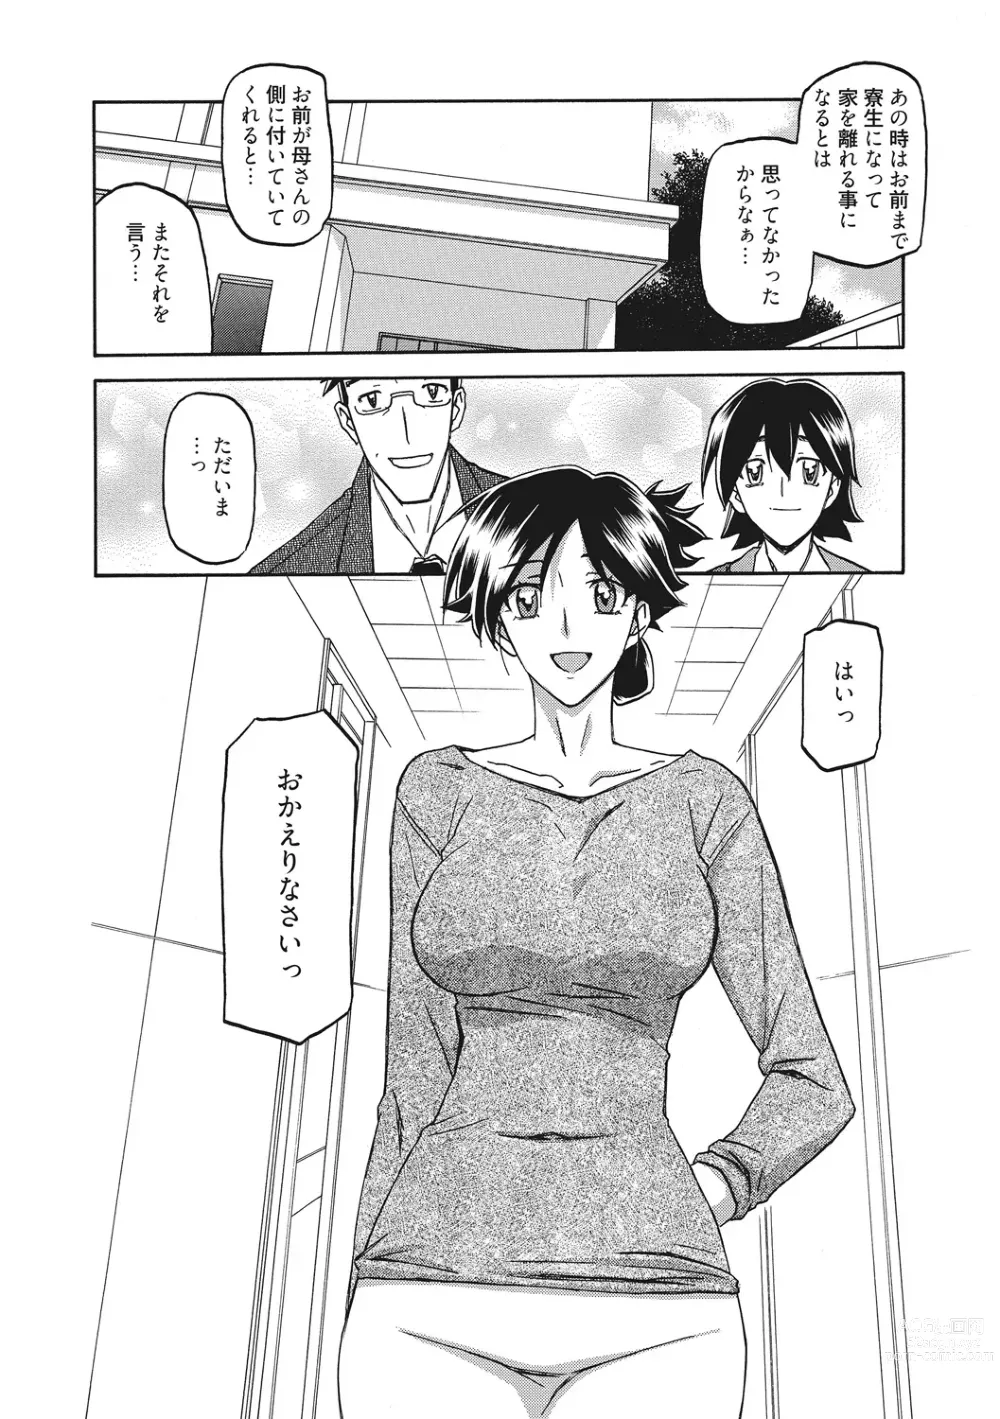 Page 6 of manga Gekkakou no Ori